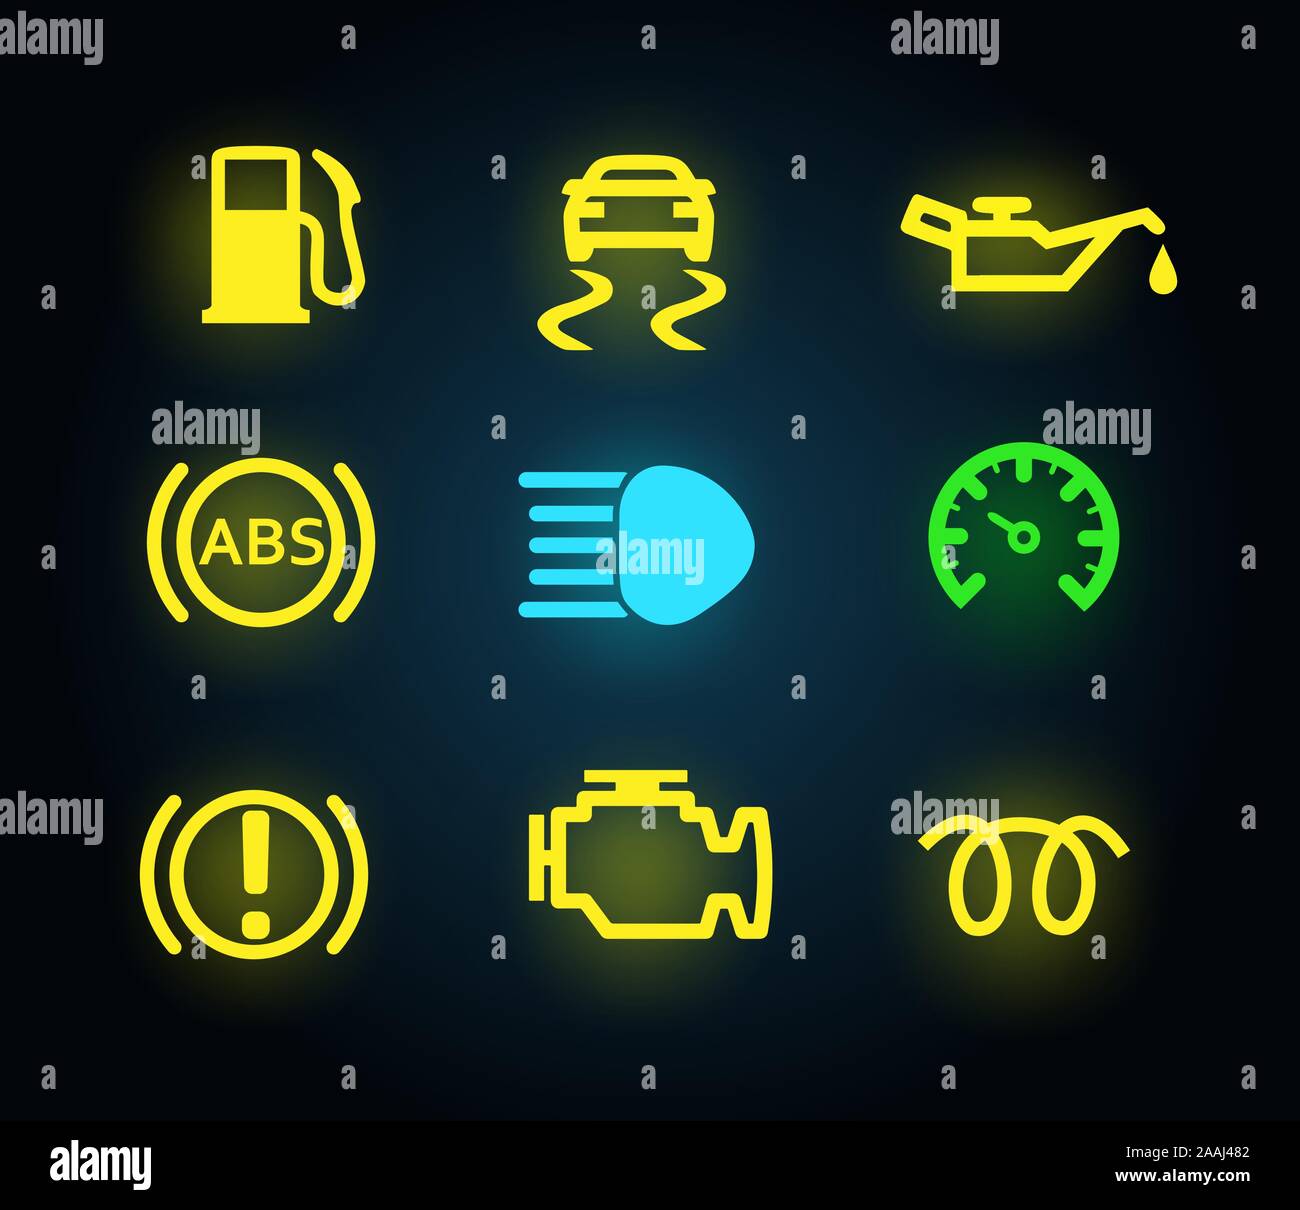 Satz von gelben und grünen Licht Armaturenbrett anzeigen, Symbole isoliert, Benzin, Öl, Motor, ABS, Brems, Vector Illustration Stock Vektor